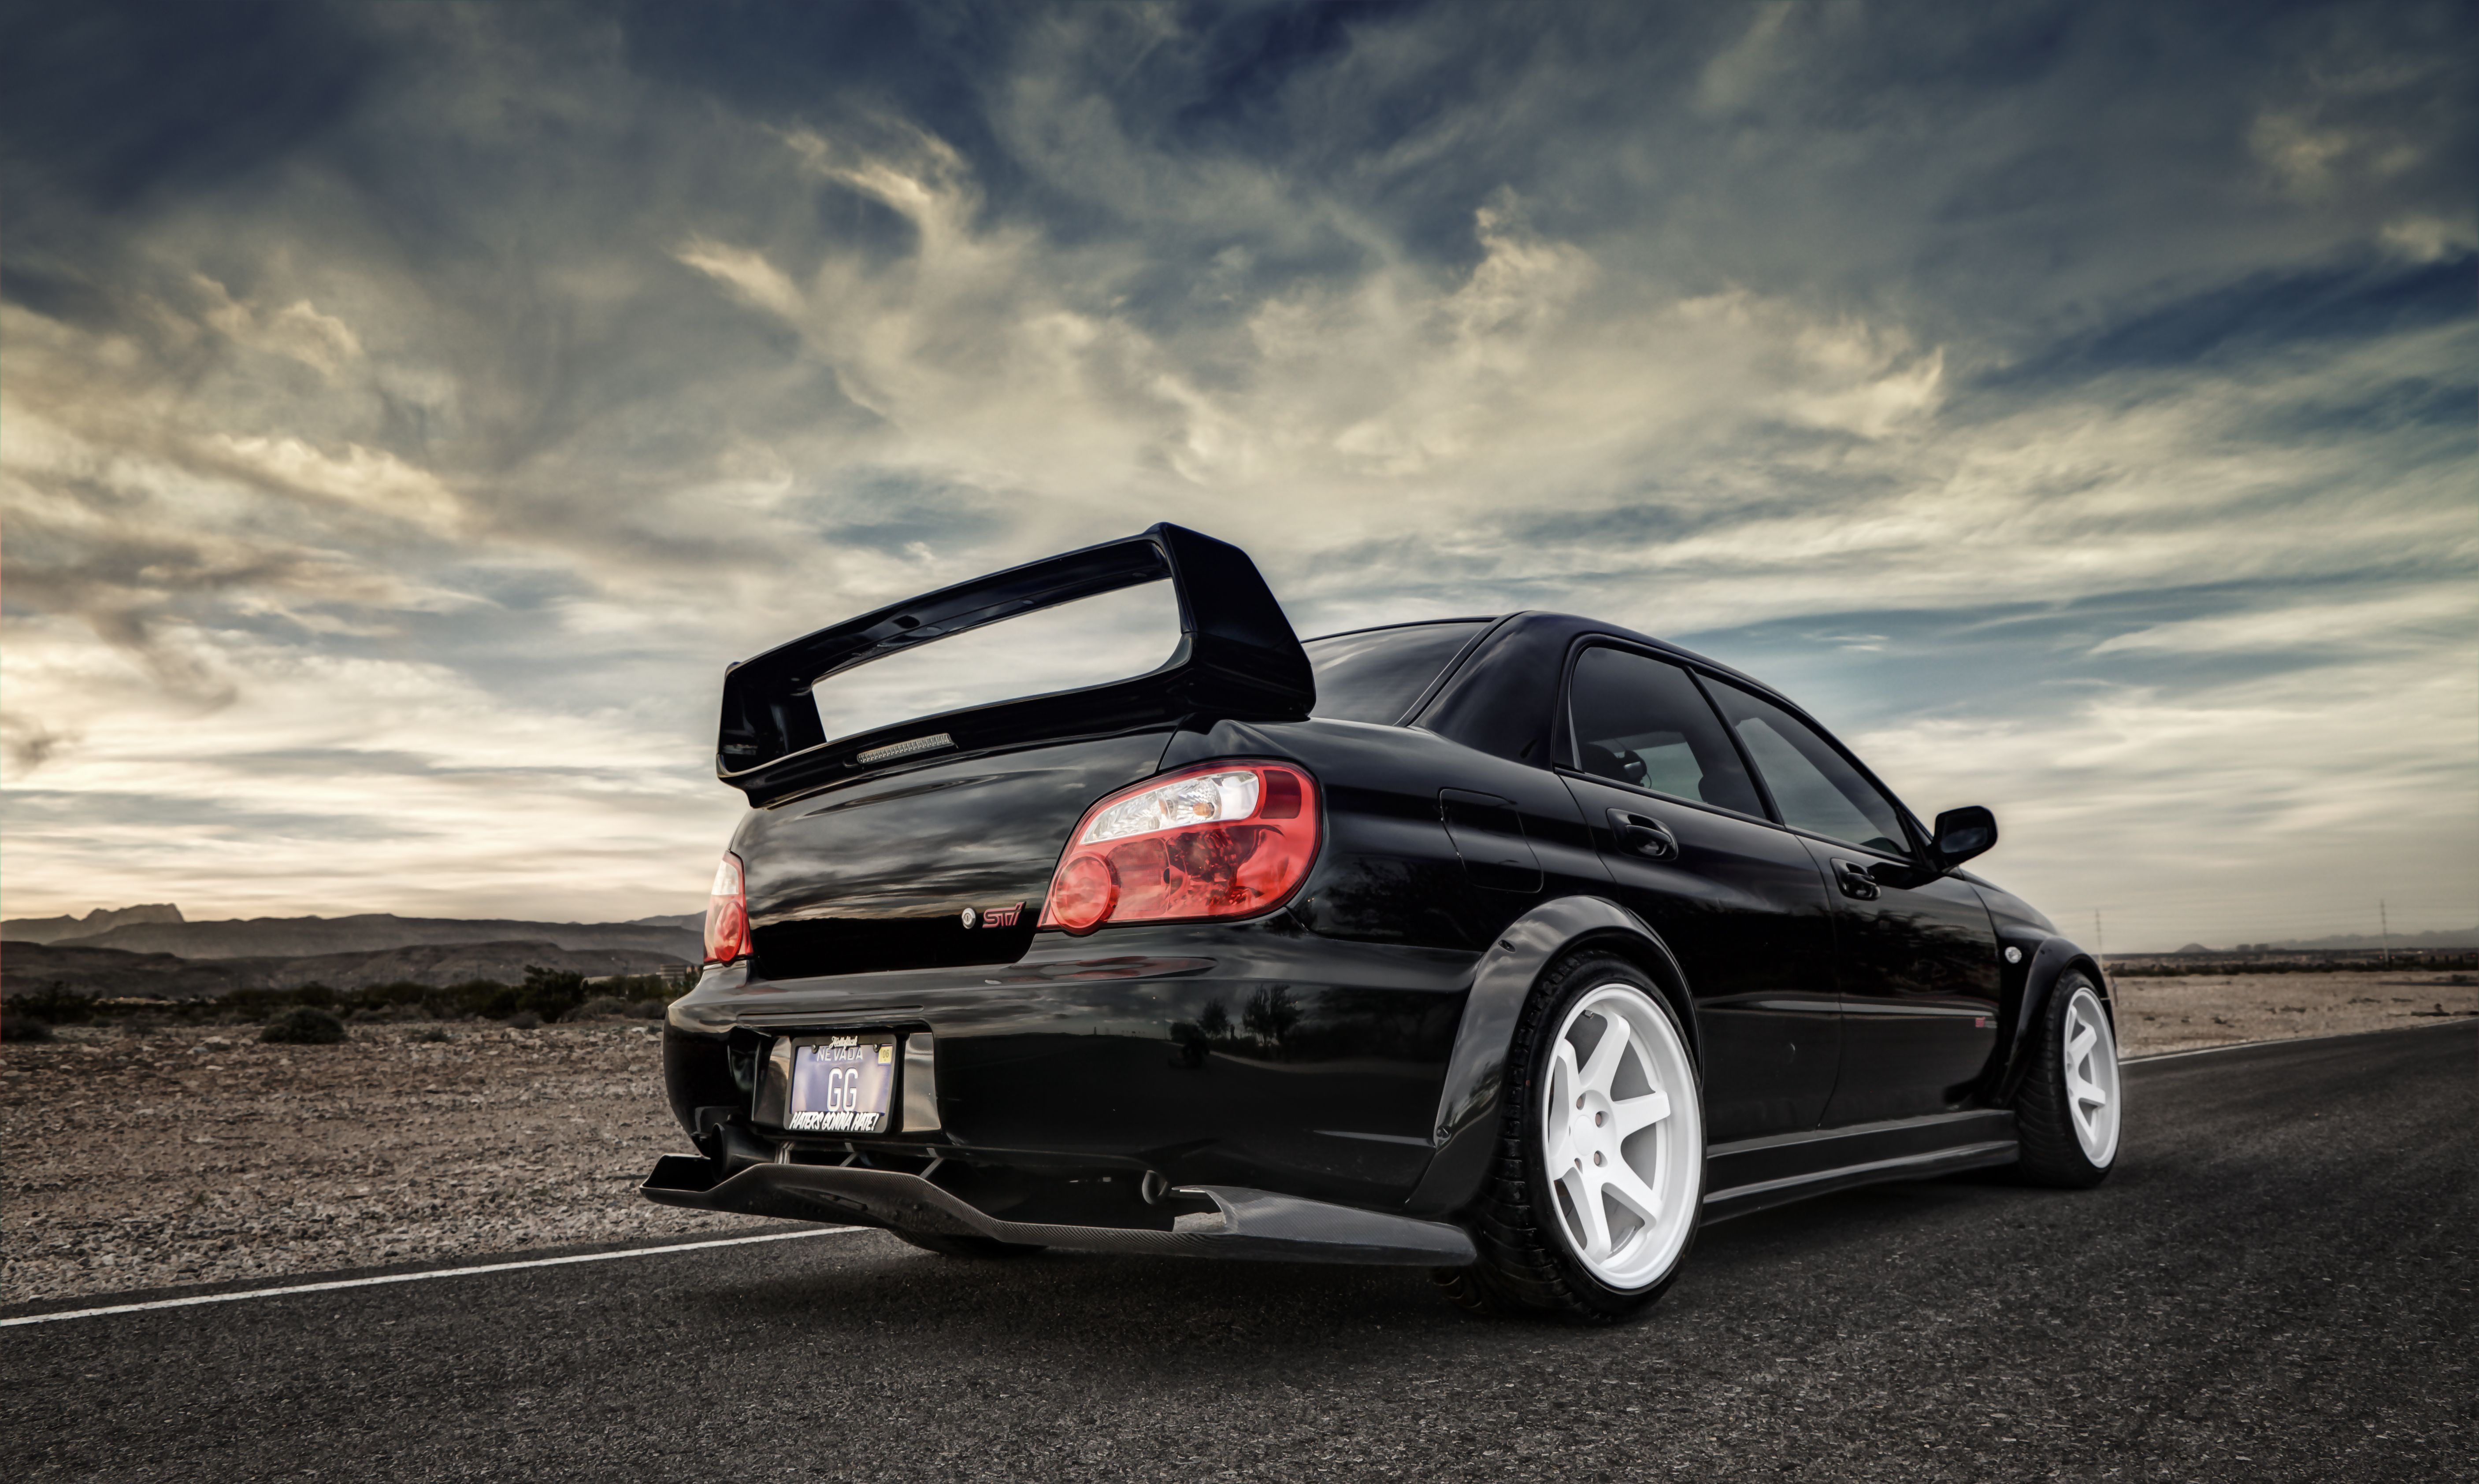 Best 52+ Subaru Backgrounds on HipWallpapers